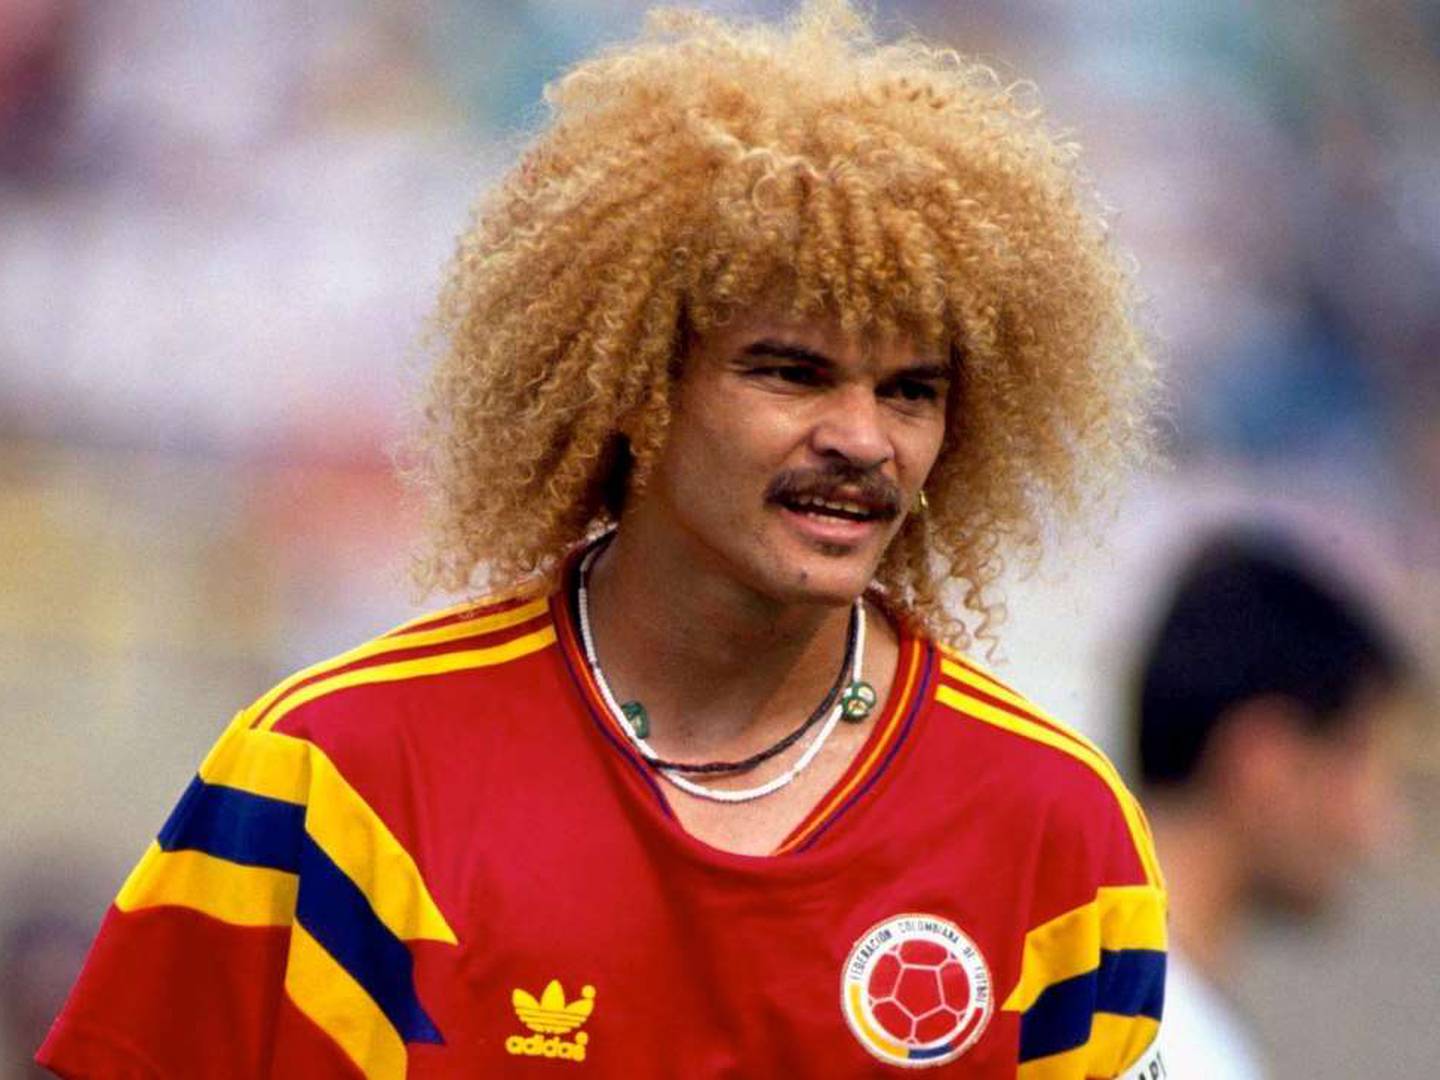 Adidas relanza la camiseta roja de Colombia en el Mundial de Italia 1990 –  ComuTricolor